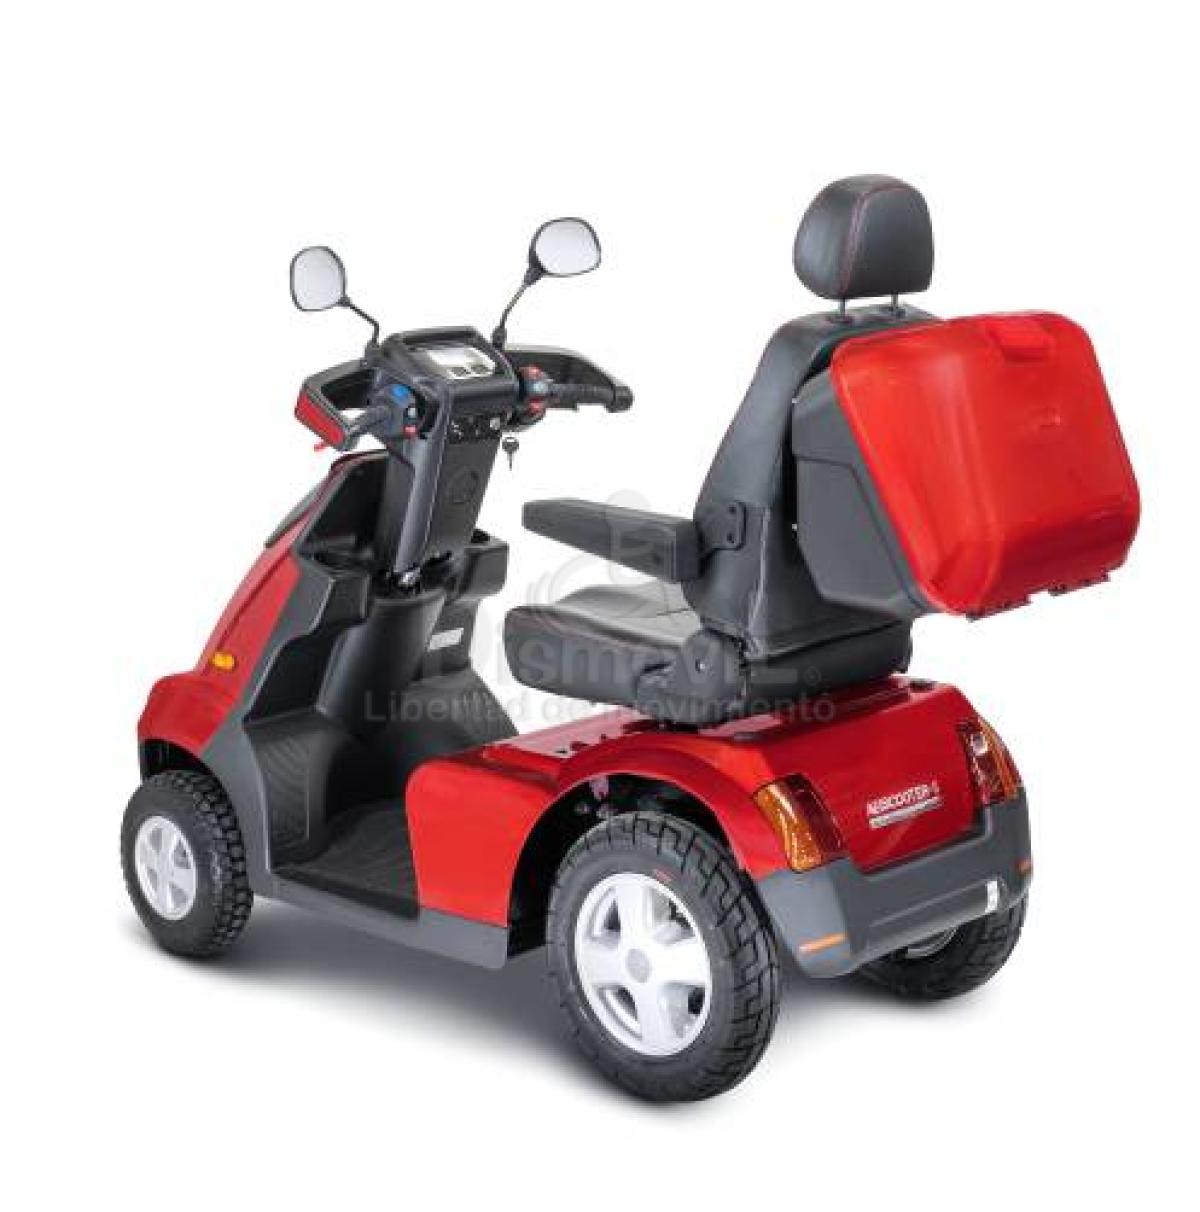 Scooter eléctrico para discapacitados o personas con movilidad reducida.